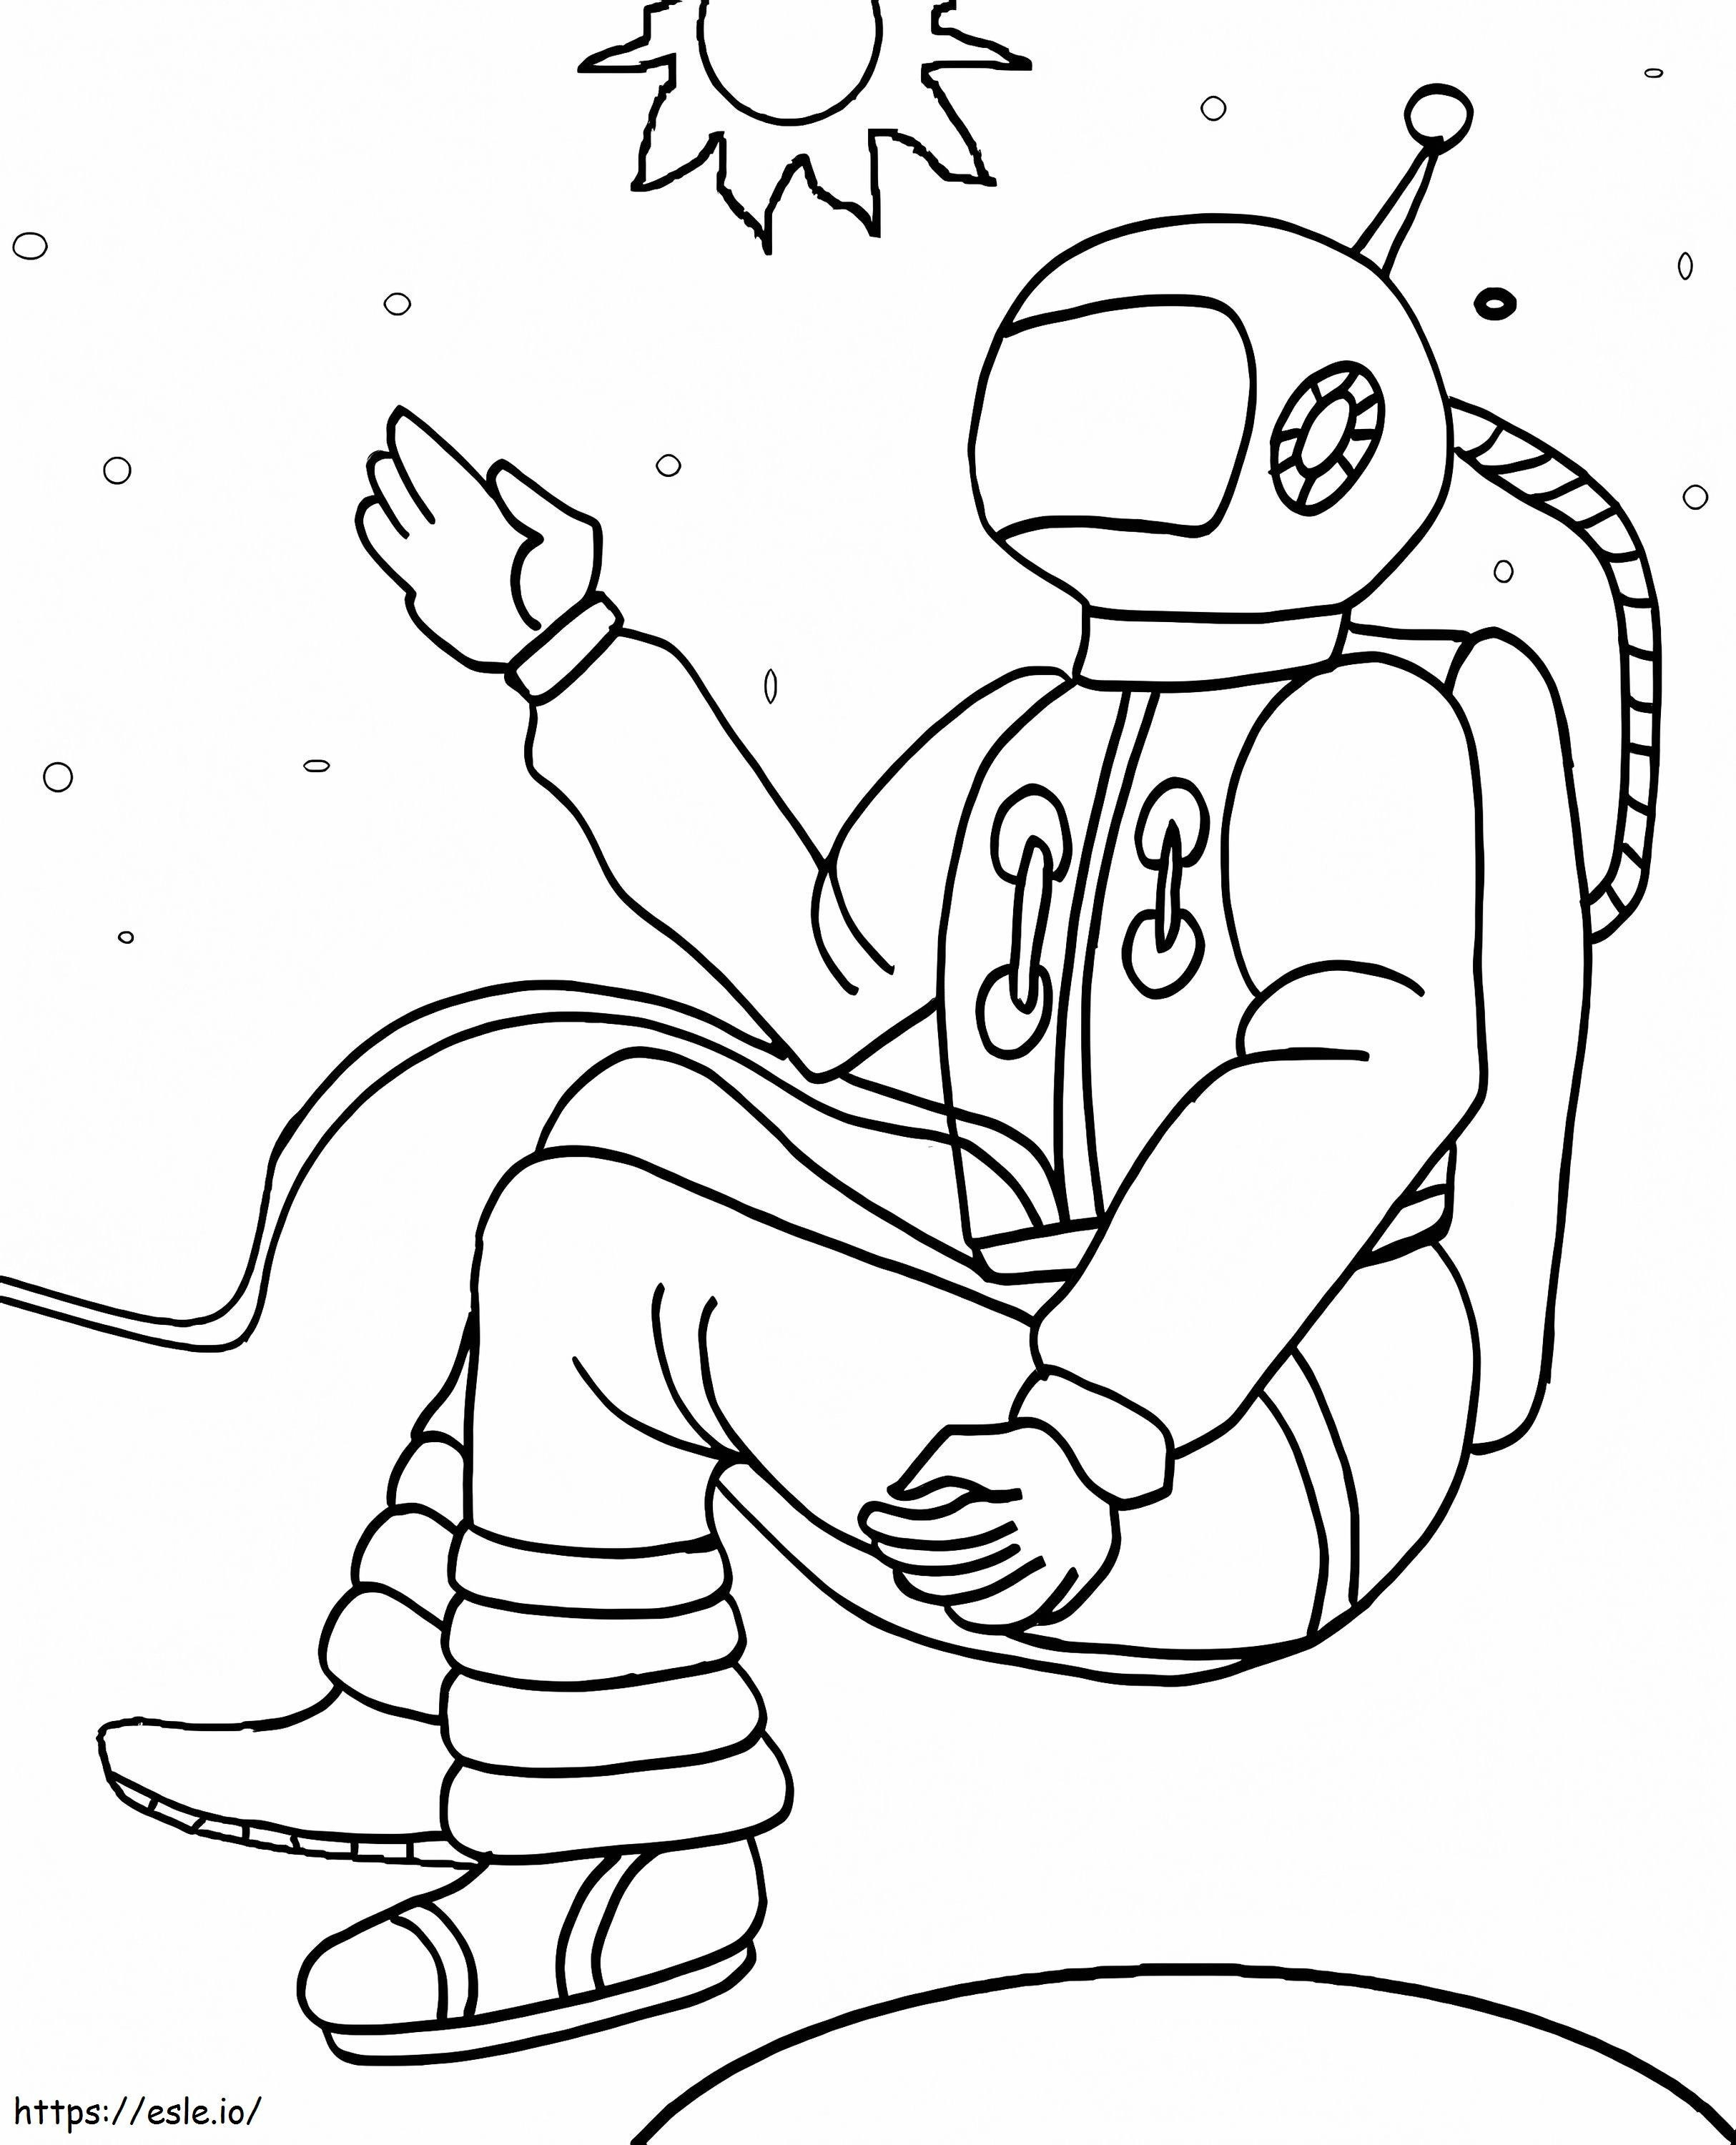 Coloriage Astronaute régulier à imprimer dessin